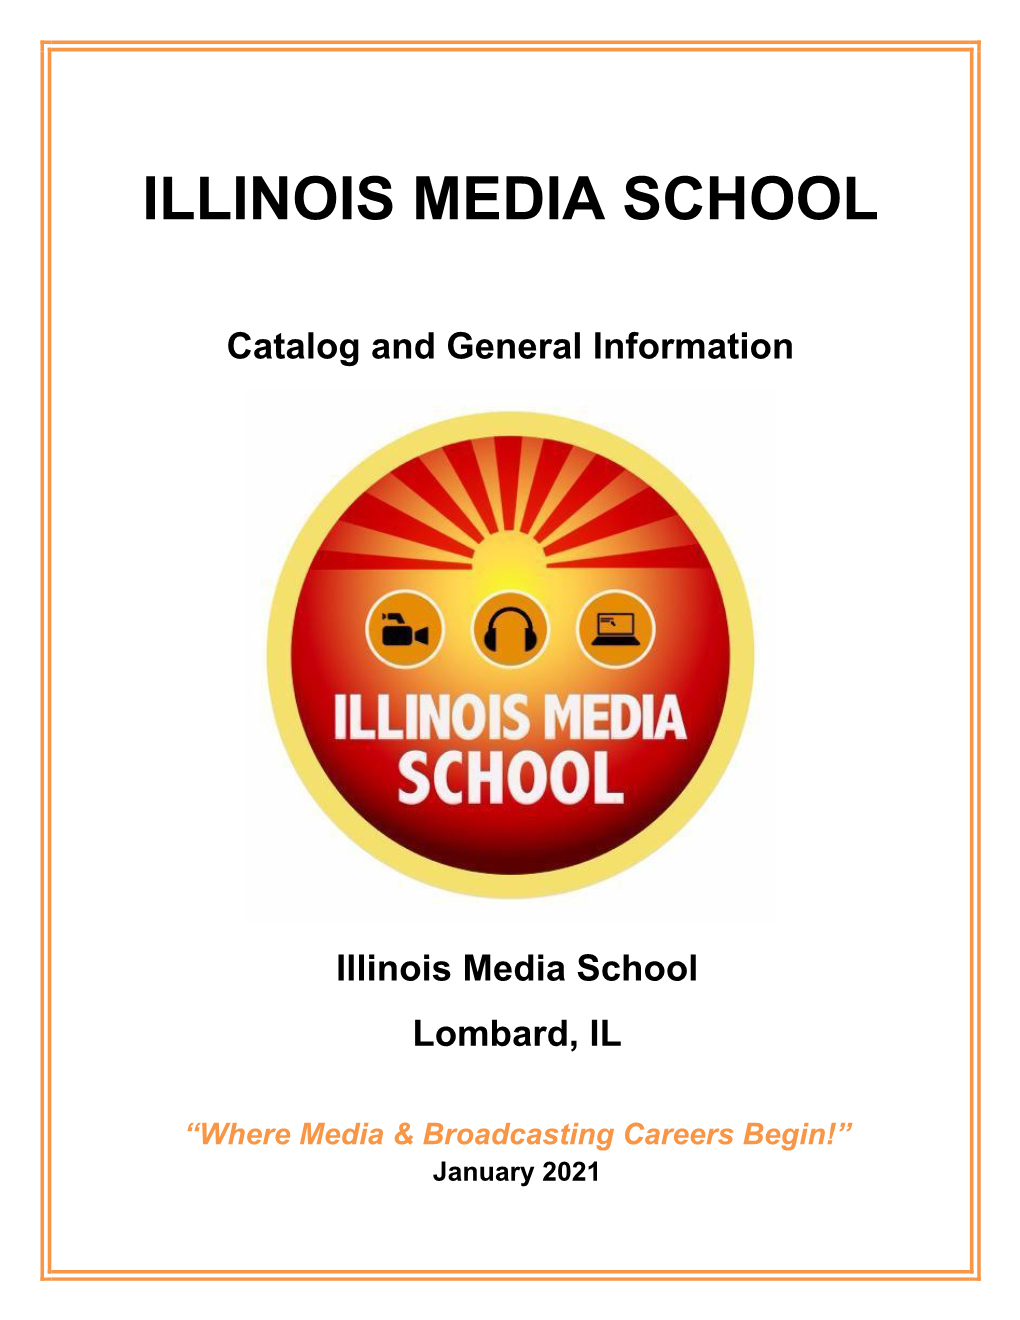 Illinois Media School